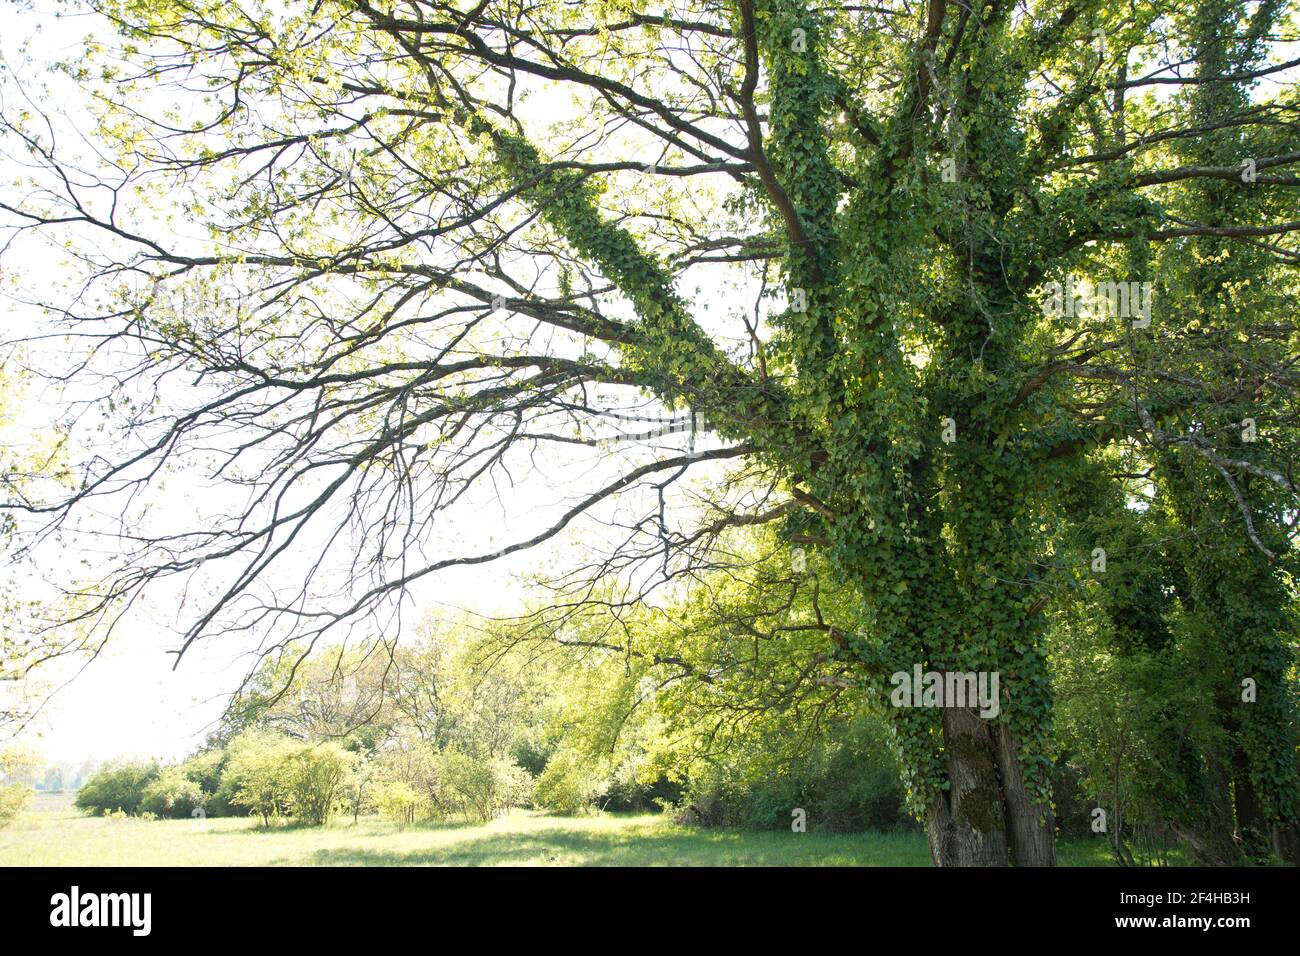 Altehrwürdige Lindenbäume im elsässischen Naturschutzgebiet Petite Camarque Alsacienne Foto Stock